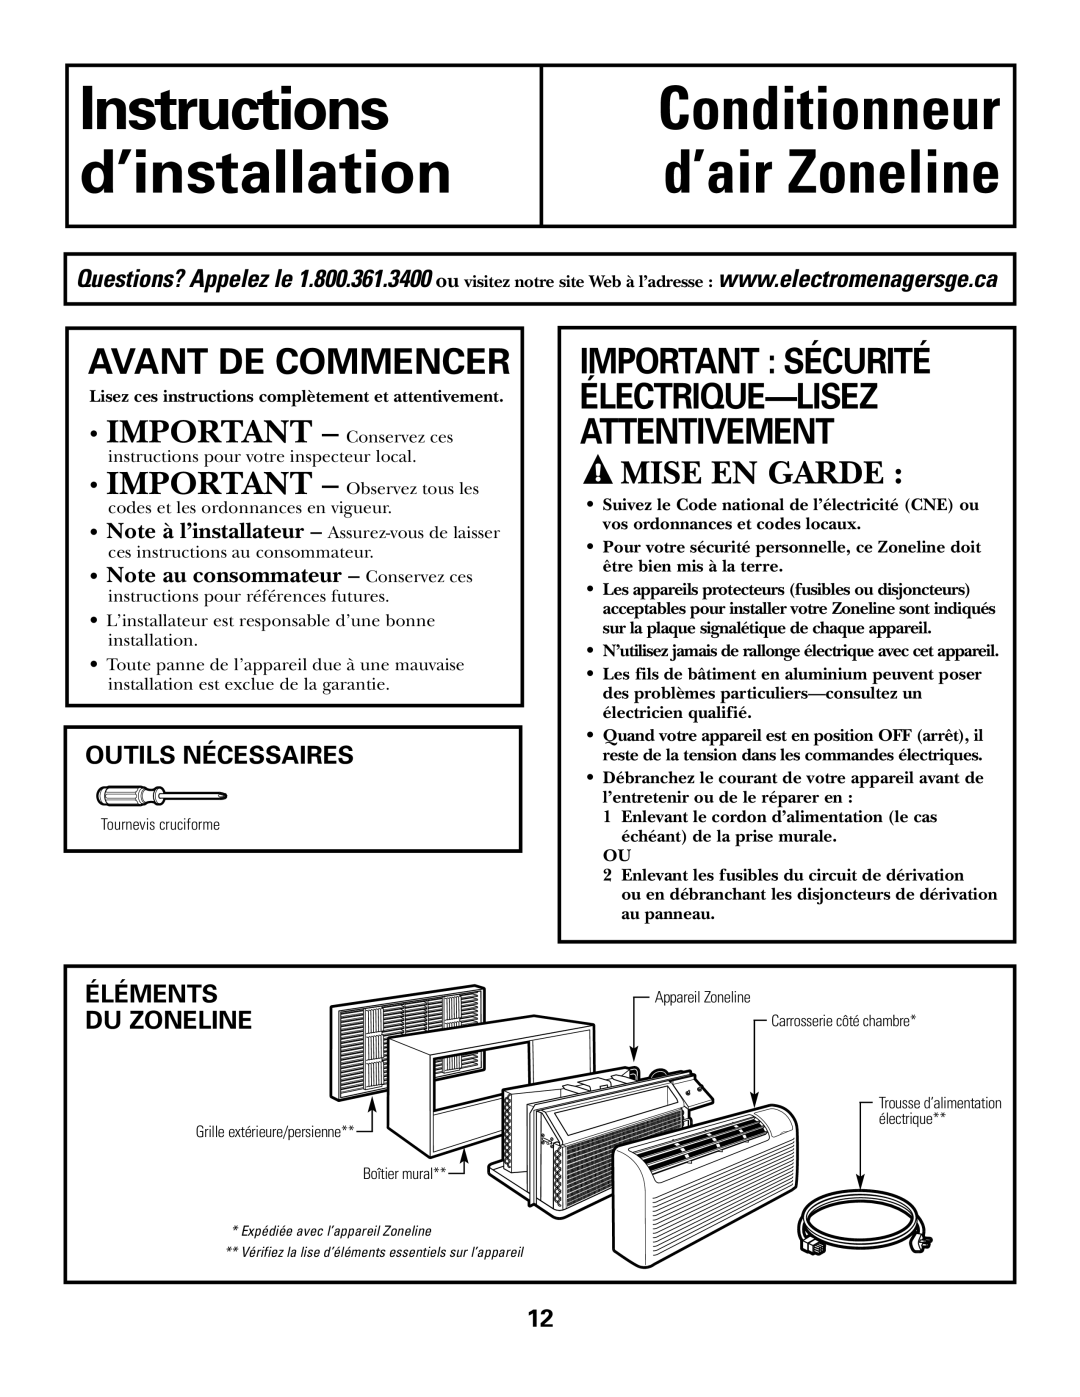 GE 3800 Instructions d’installation, Conditionneur d’air Zoneline, Avant De Commencer, Mise En Garde, Outils Nécessaires 